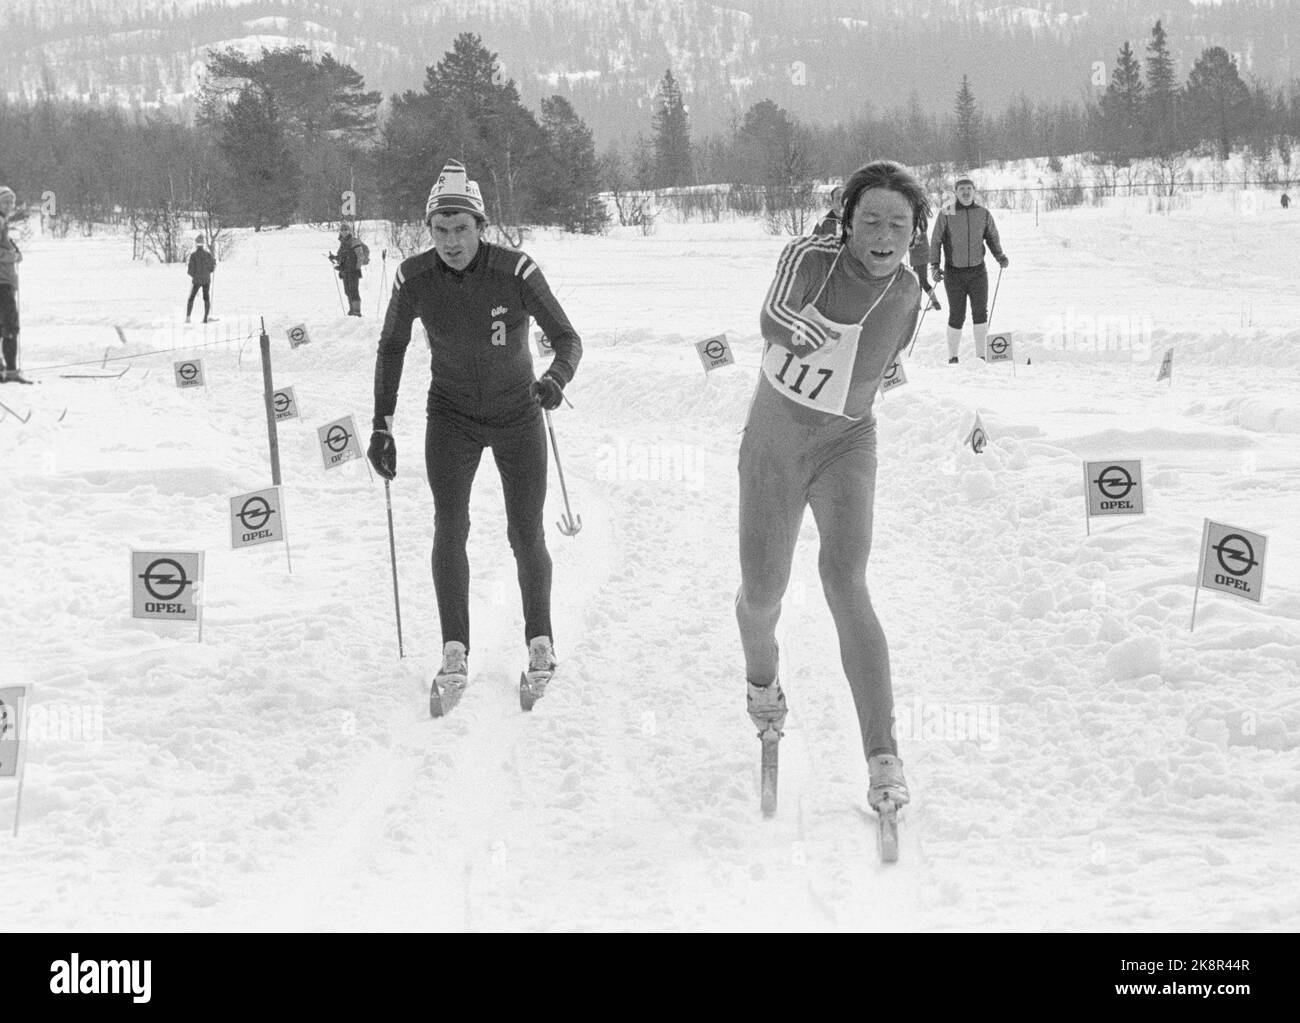 Beitostølen 19810404: Cato Zahl-Pedersen sfreccia in gol nella corsa dei Cavalieri per la disabilità a Beitostølen. Ha vinto la classe per il movimento in discesa sotto i 25 anni. Foto: NTB / NTB Foto Stock